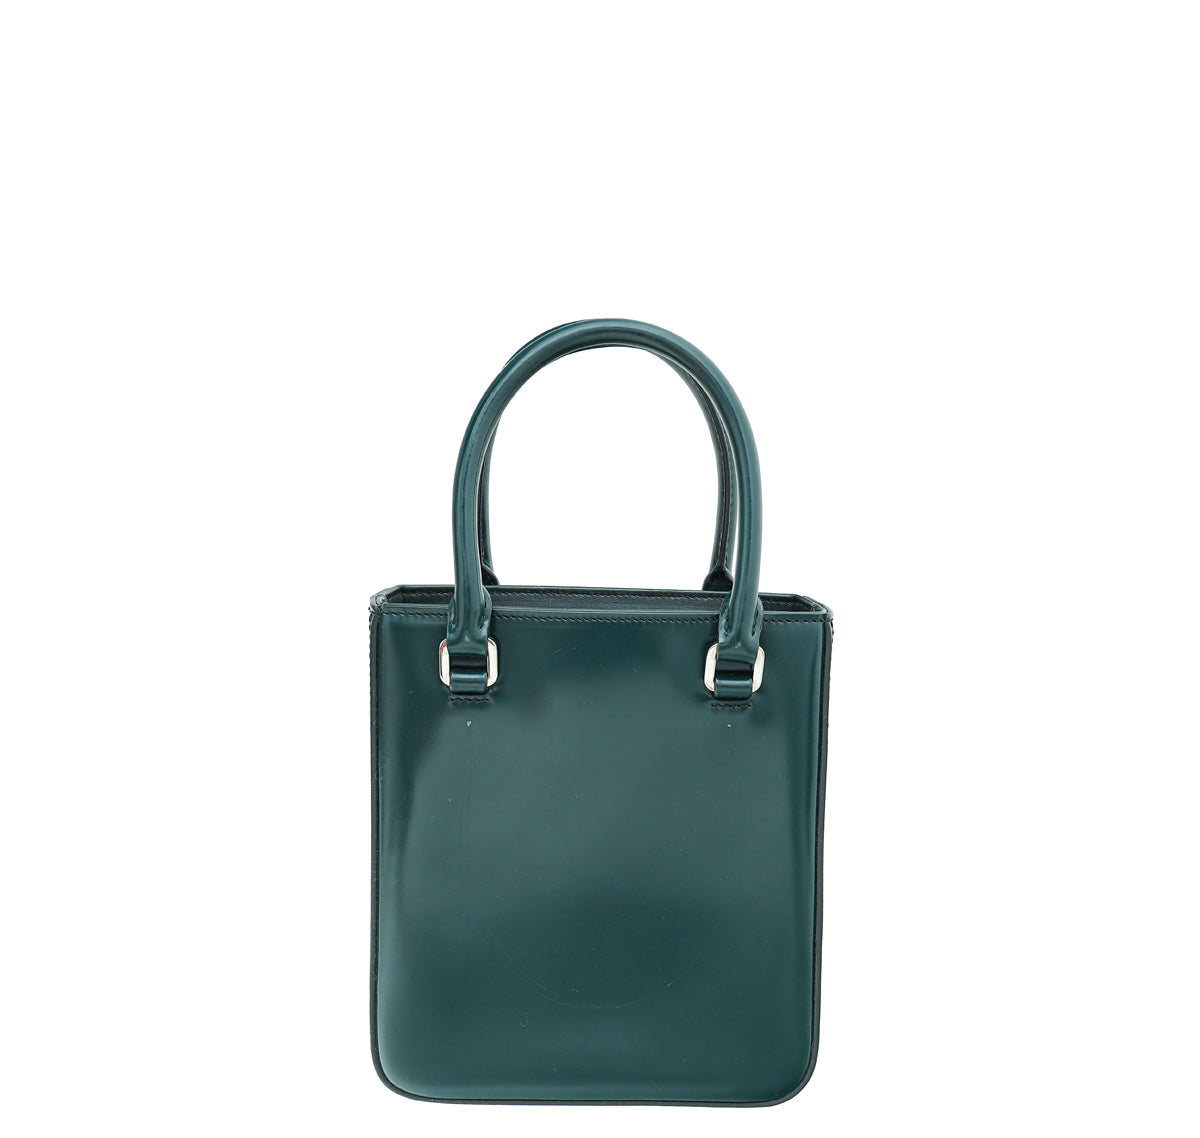 Prada Emerald Green Spazzolato Small Tote Bag